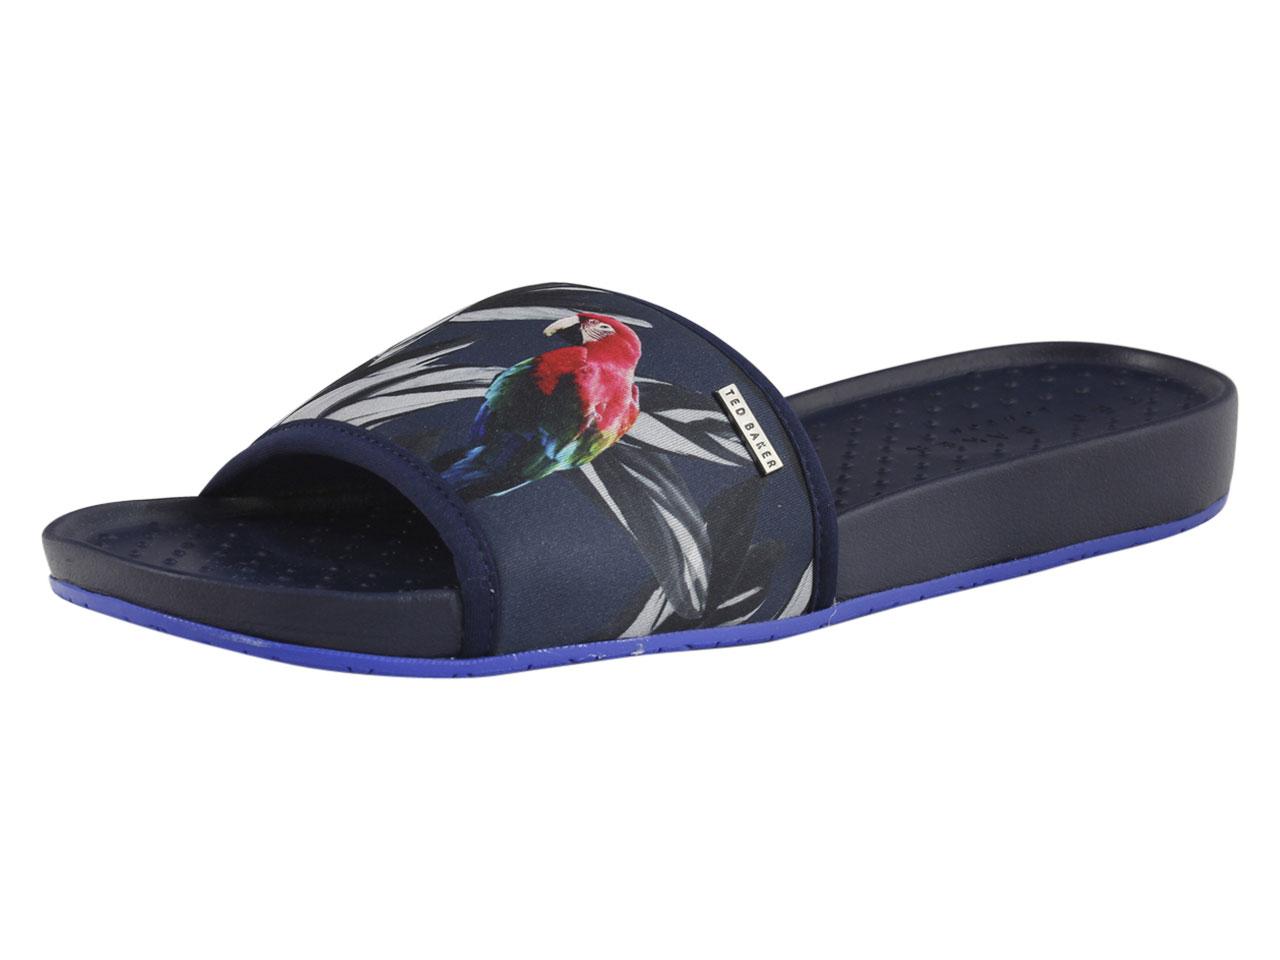 Ted Baker Men's Sauldi Slides Sandals Shoes - Blue - 13 D(M) US